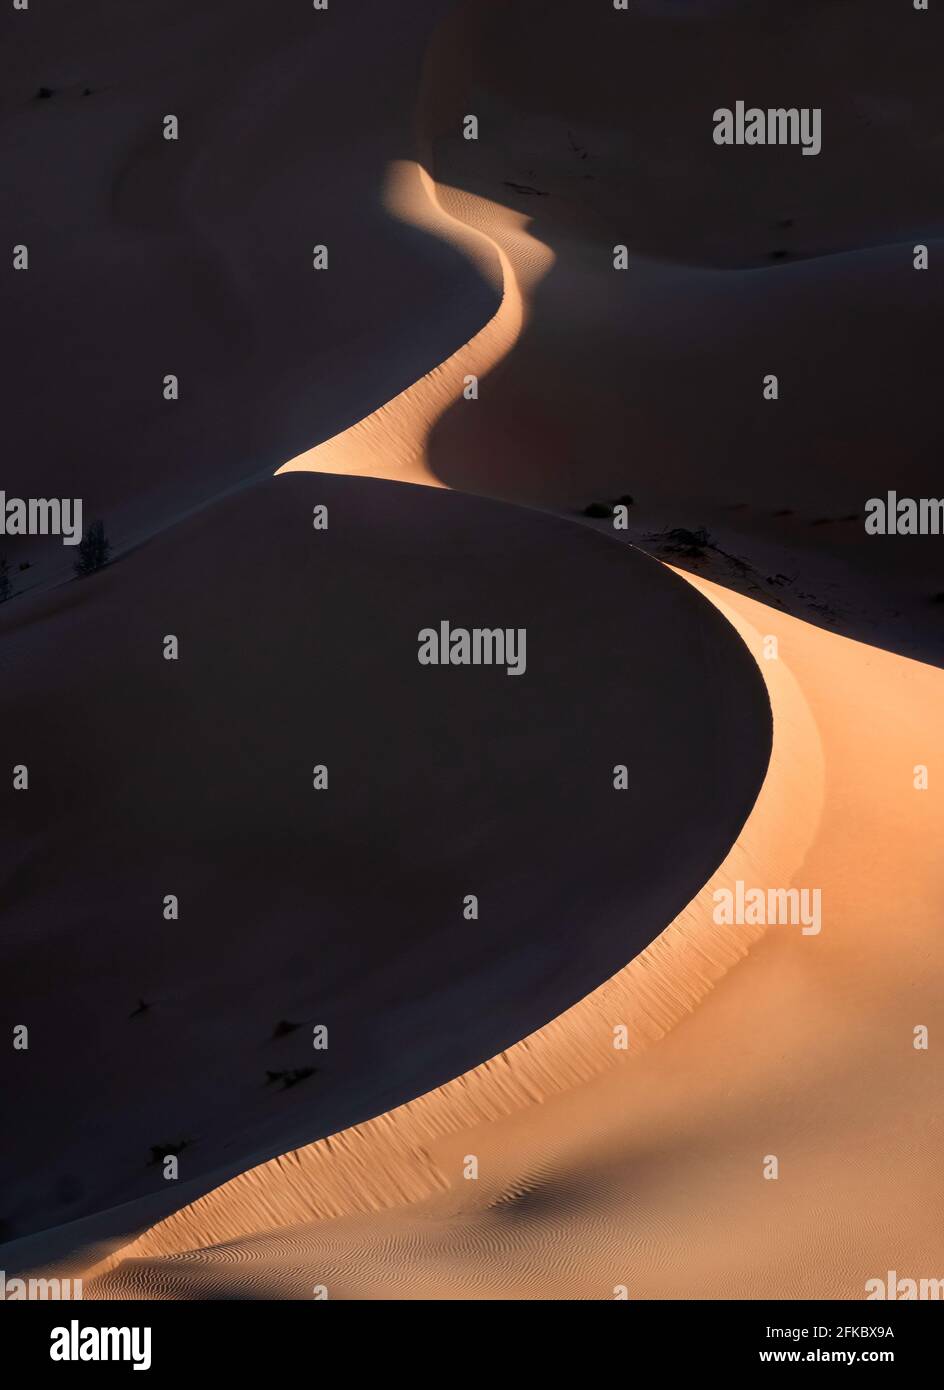 Dunas de arena al amanecer con alto contraste en el desierto de RUB al Khali, Omán, Oriente Medio Foto de stock